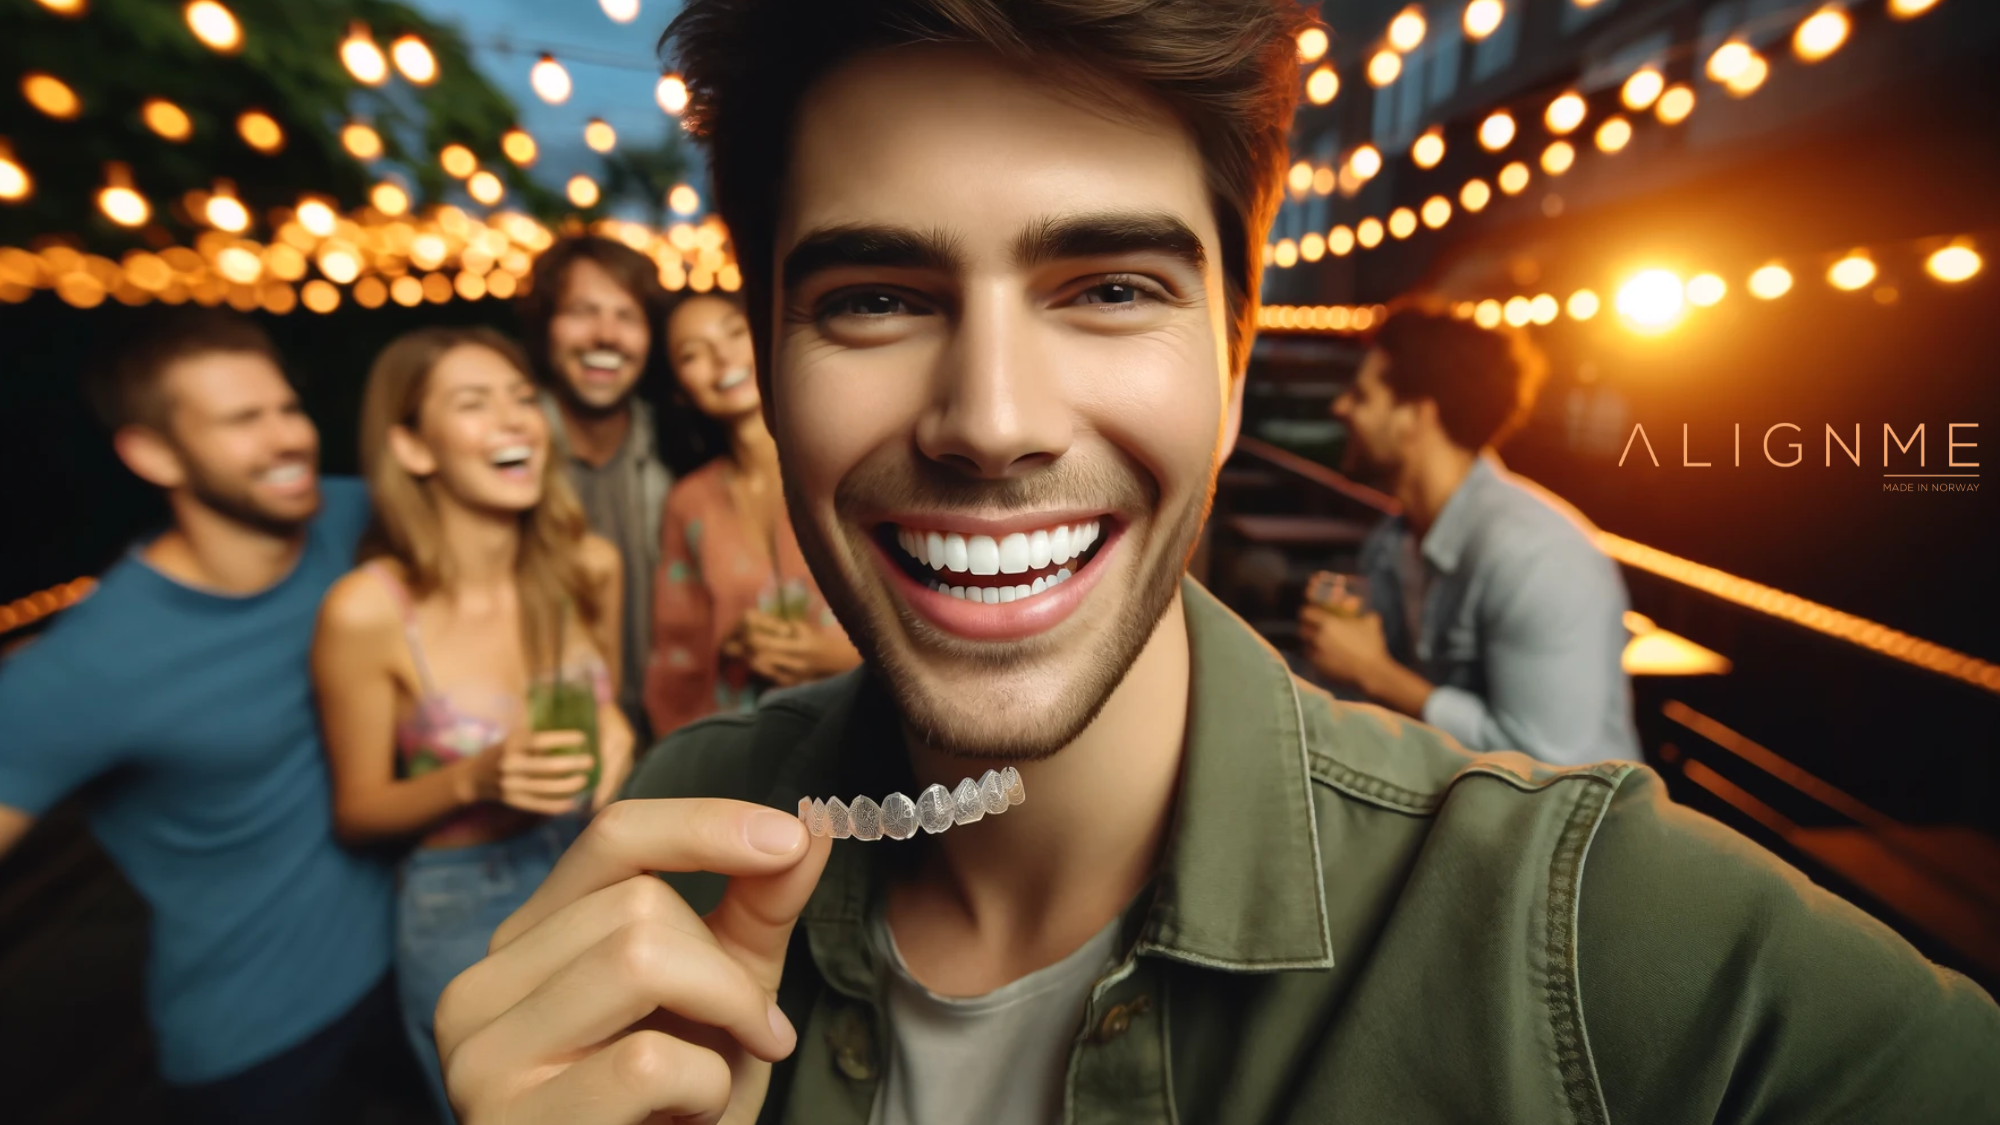 Ung mann viser usynlige tannreguleringer og smiler på en fest med venner og lyslenker.